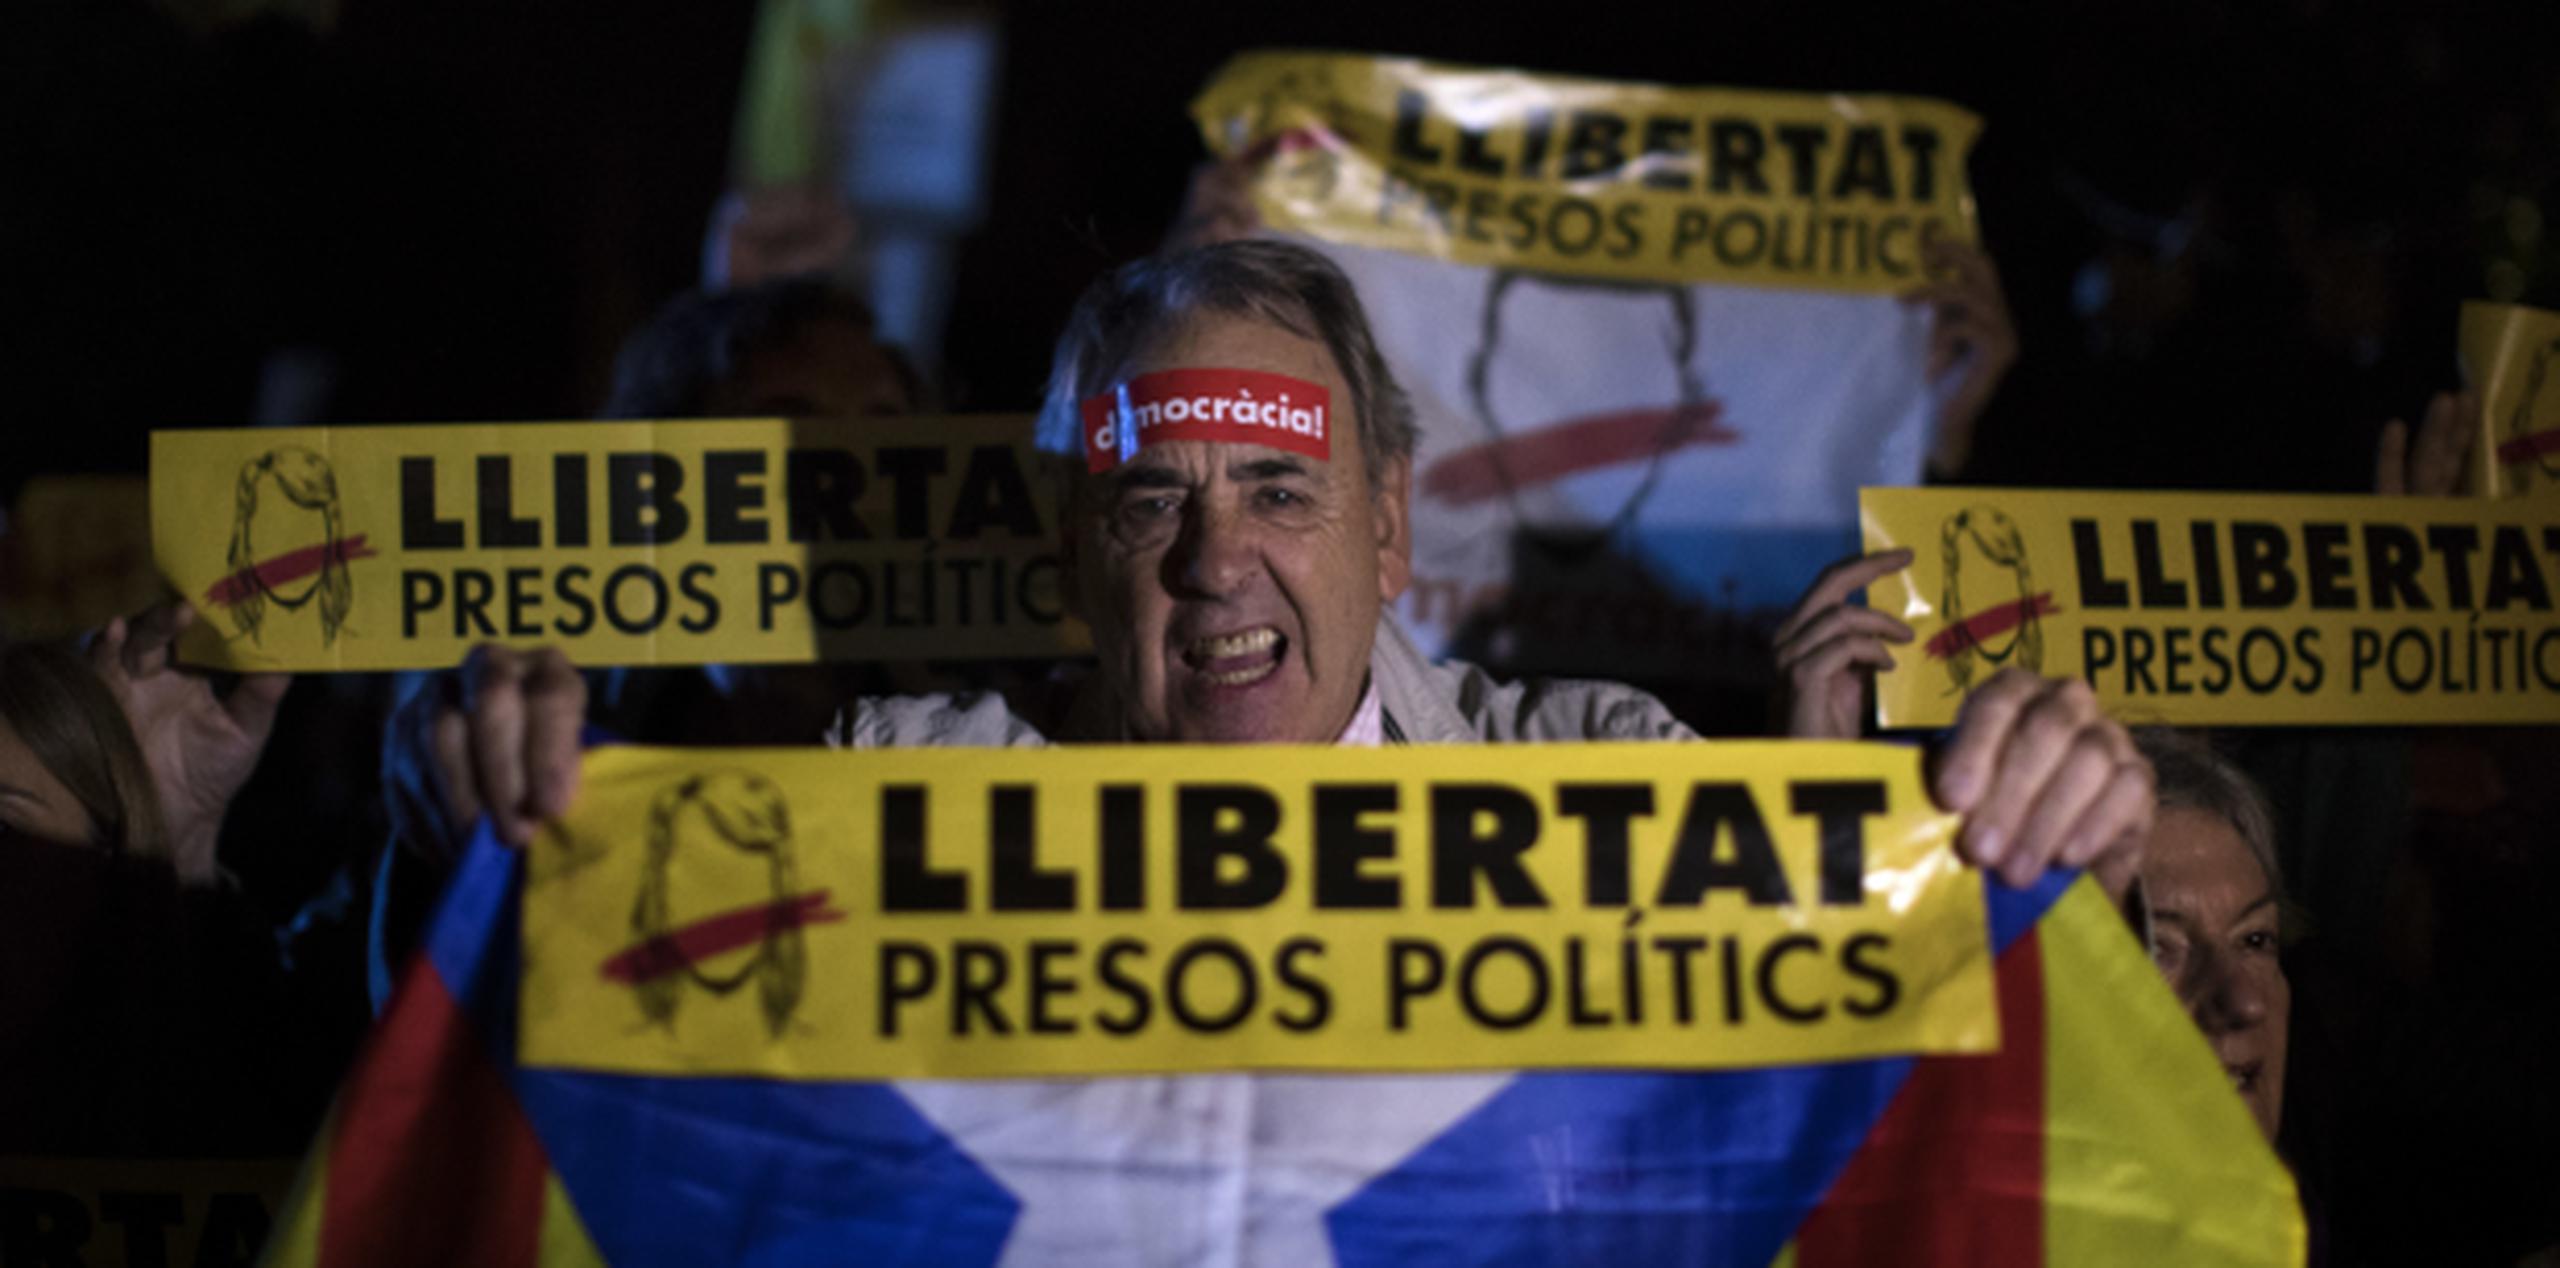 Una protesta reciente de grupos pro independencia de Cataluña en reclamo por la excarcelación de figuras independentistas que han sido encarcelados. (Archivo)